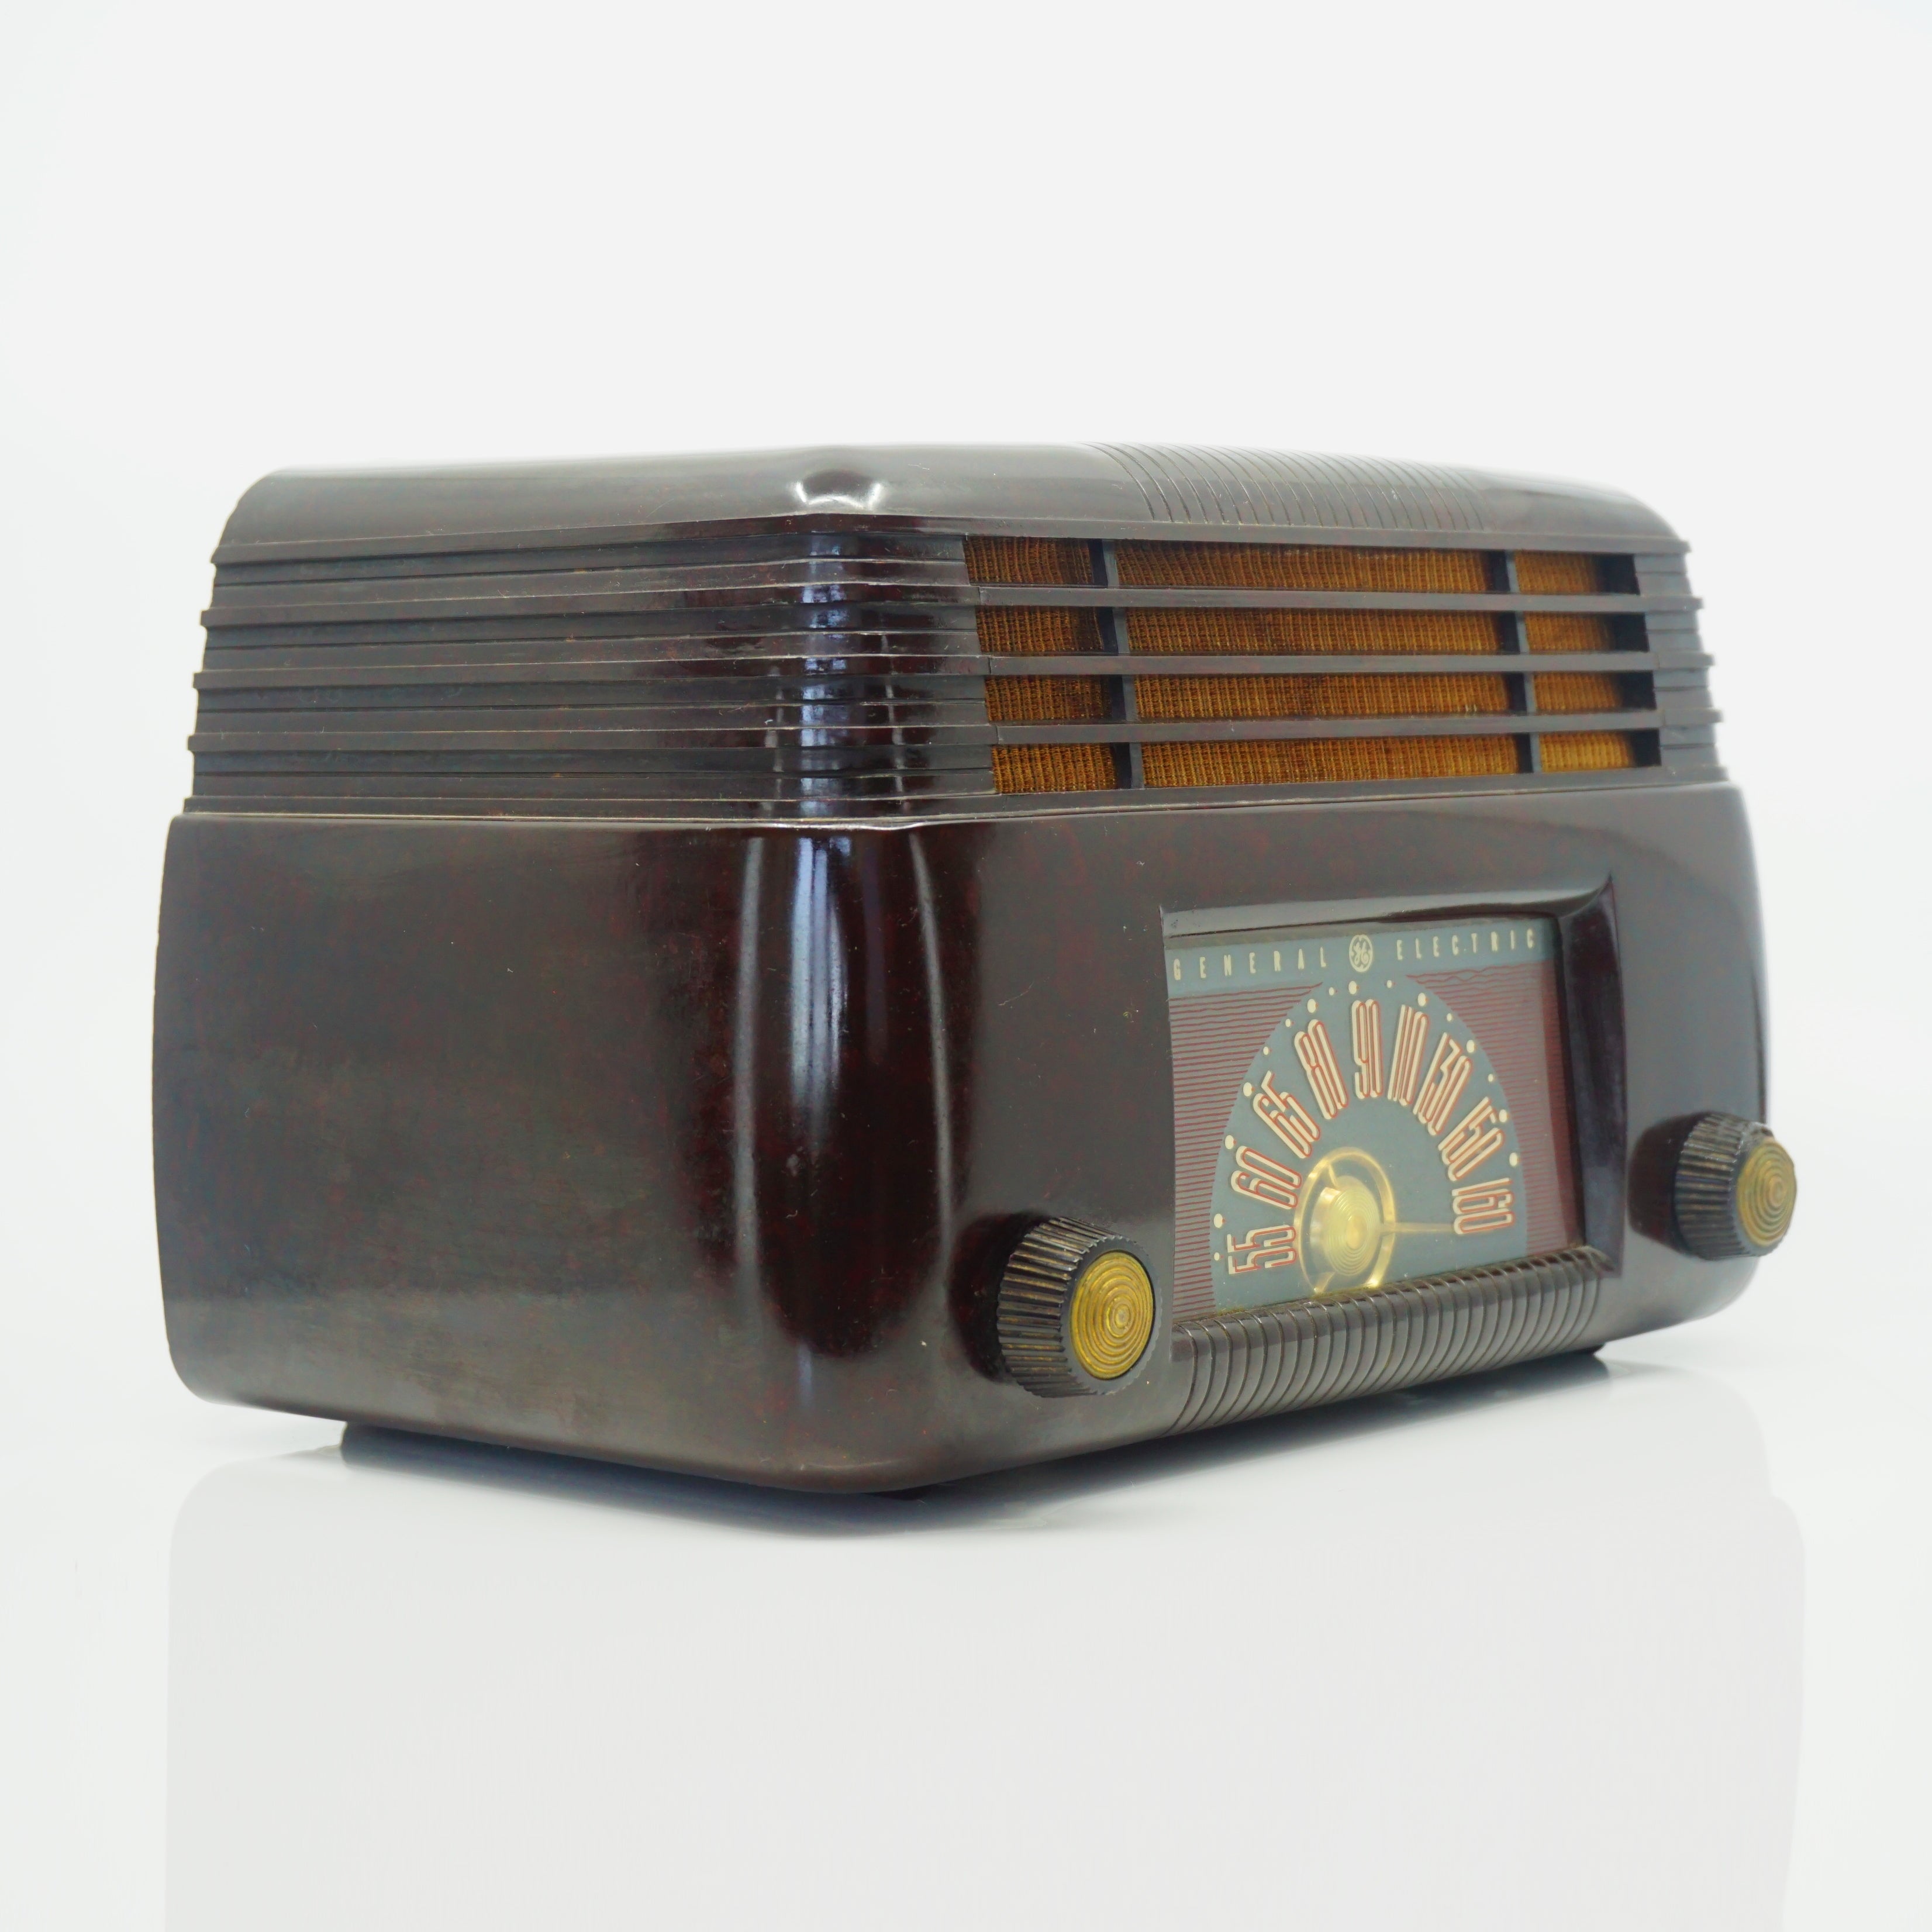 Mid-Century 1946 General Electric "Dashboard" Radio Model 100 Brown Bakelite